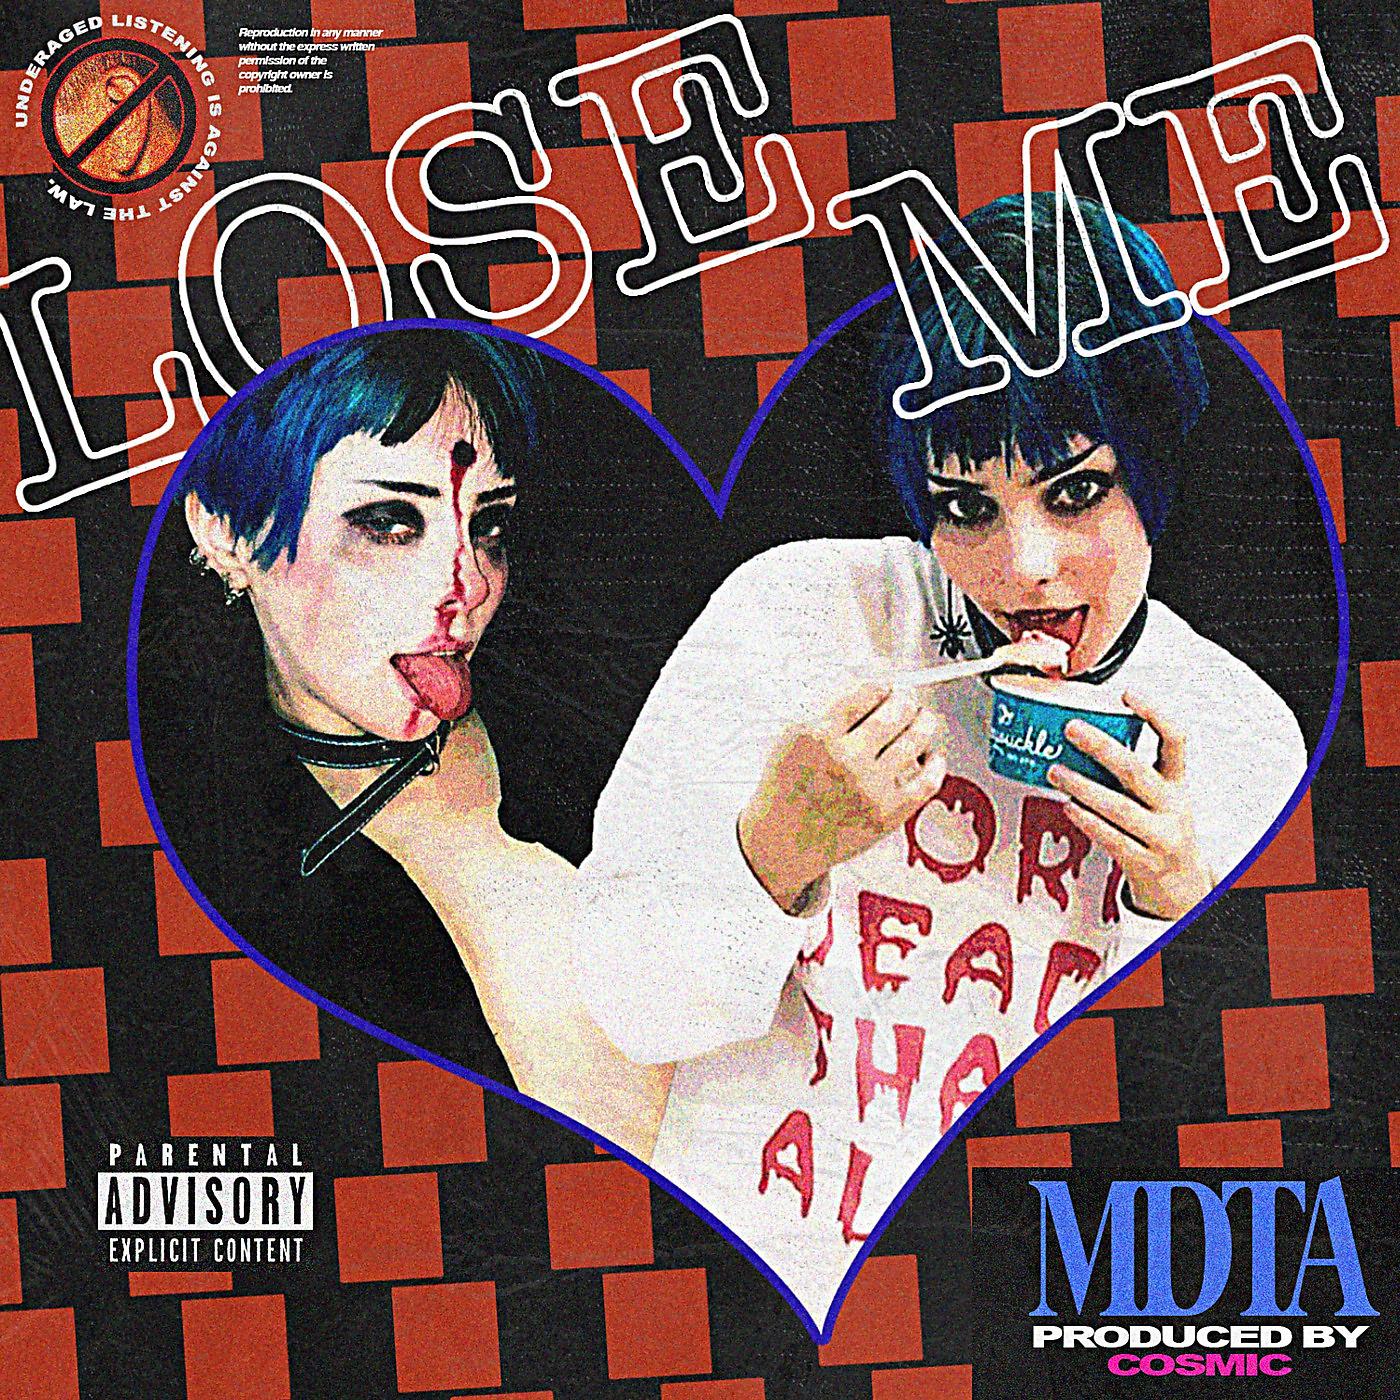 Постер альбома Lose Me